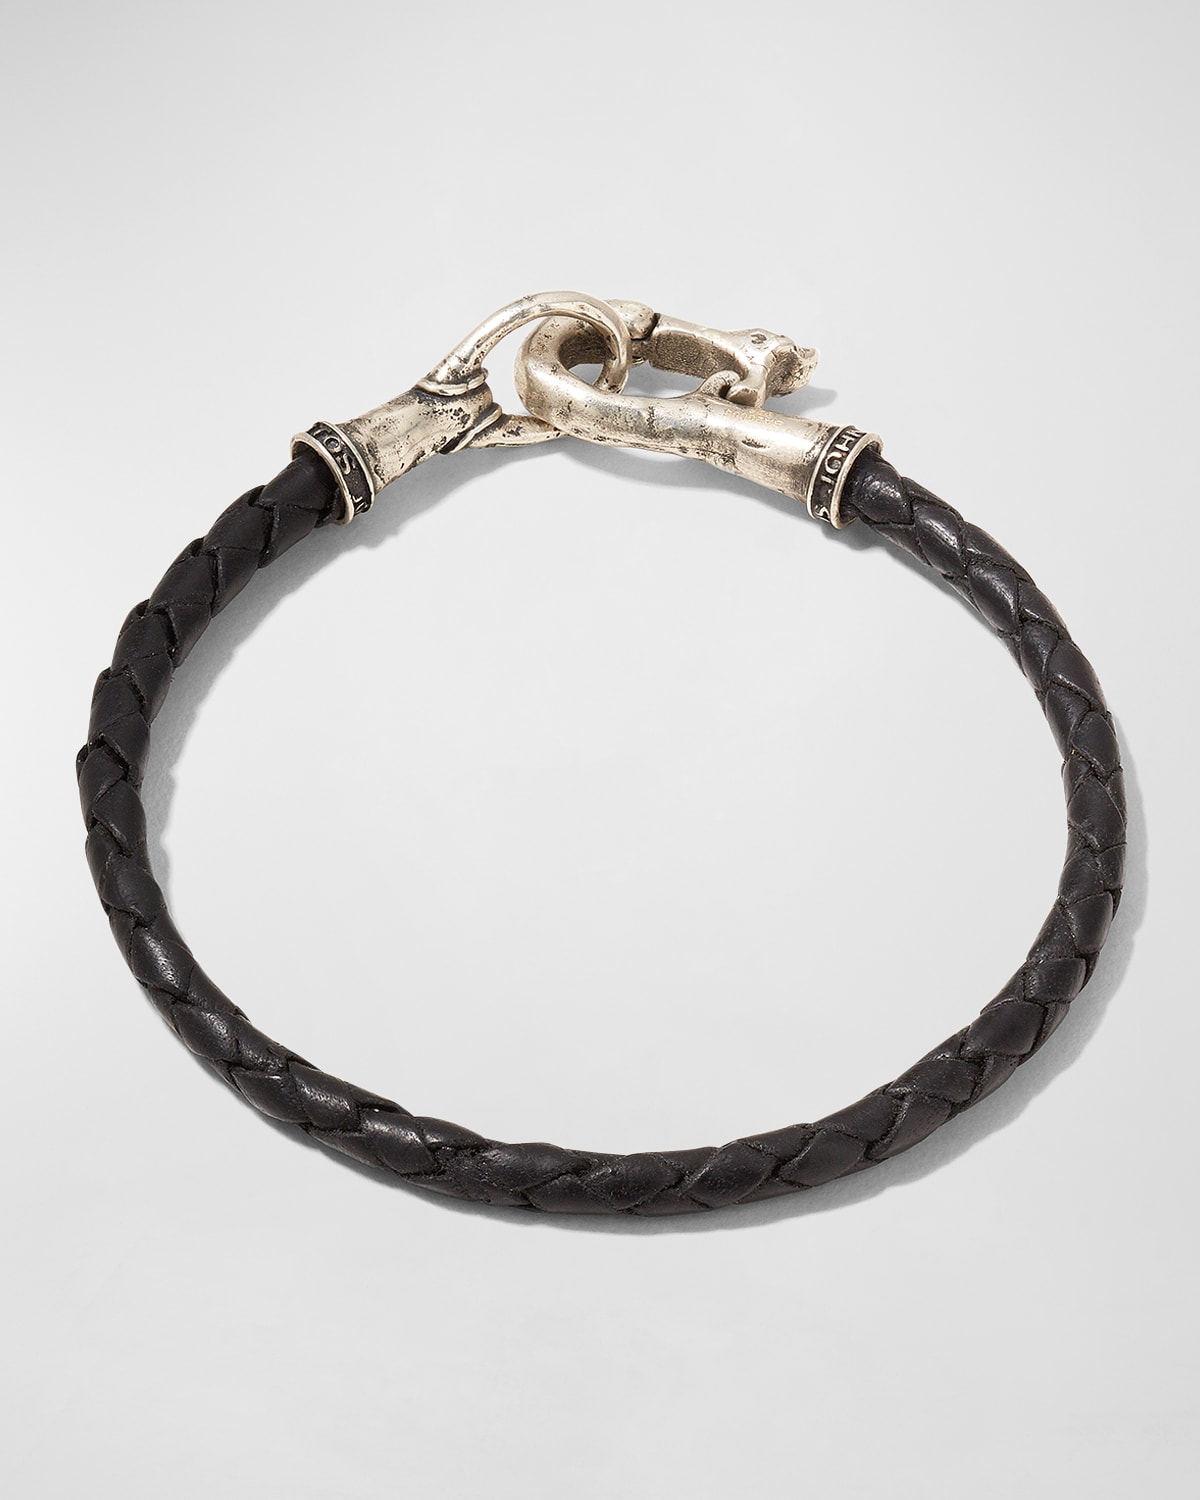 Men's Braided Leather Bracelet